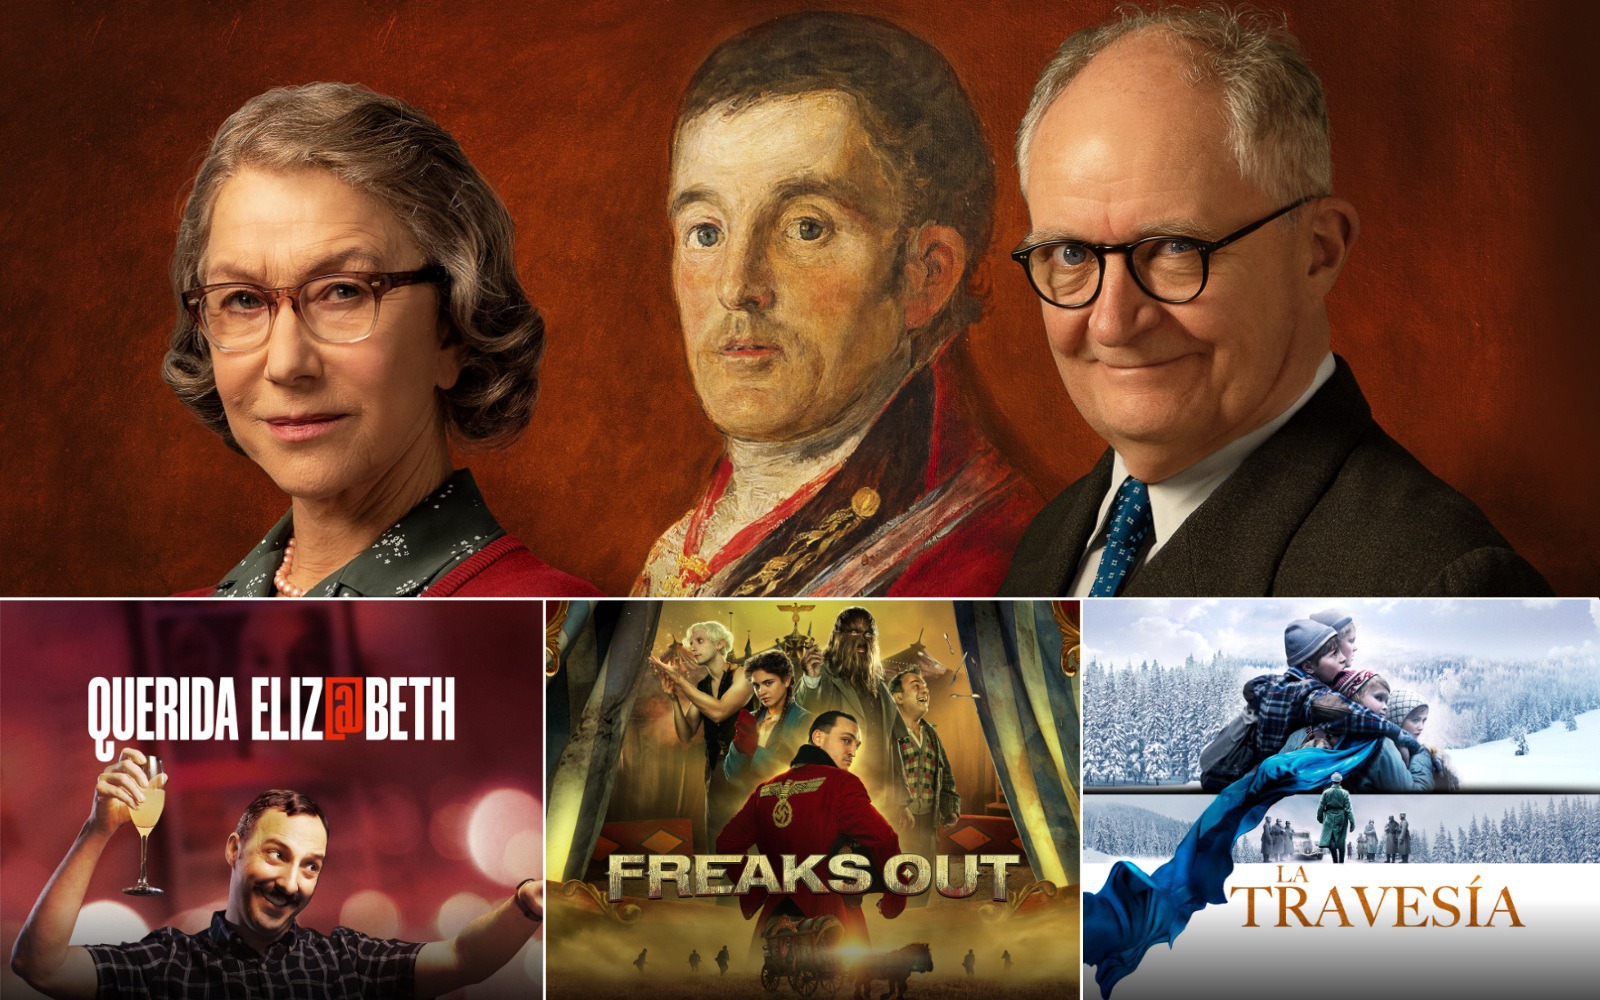 Freaks Out, El duque y Querida Elizabeth o La travesía, estrenos de cine inédito en junio de 2022 en Movistar Plus+